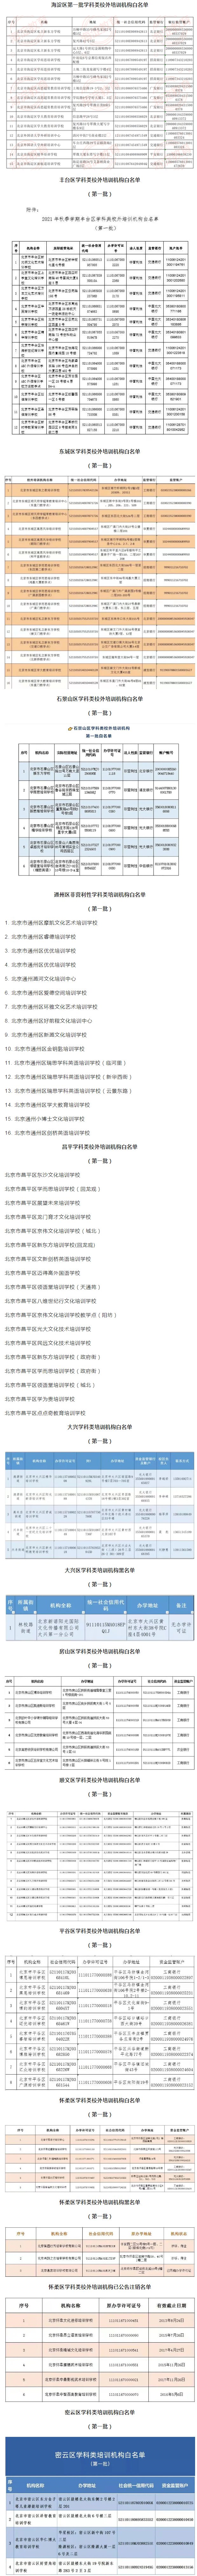 北京12区公布首批学科类校外培训机构白名单.jpg